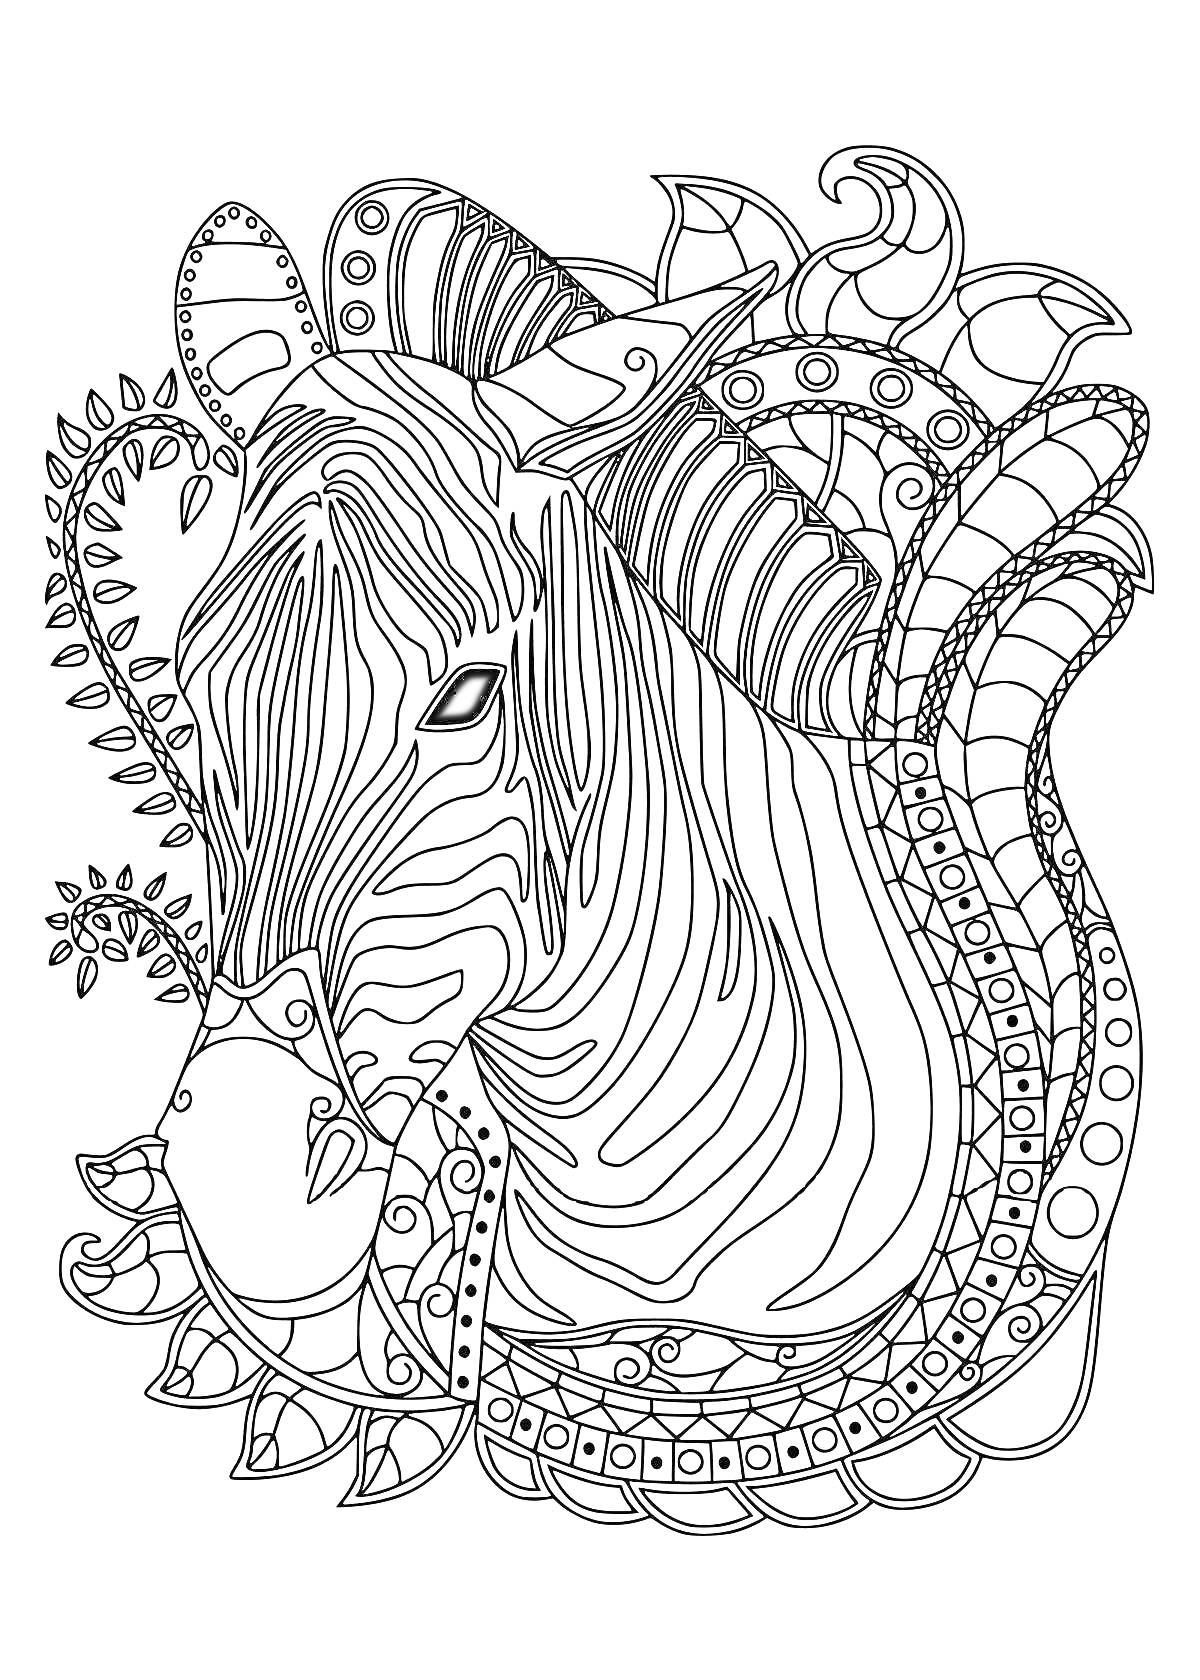 Раскраска Узоры с антилопой, окруженной растительными мотивами и абстрактными элементами